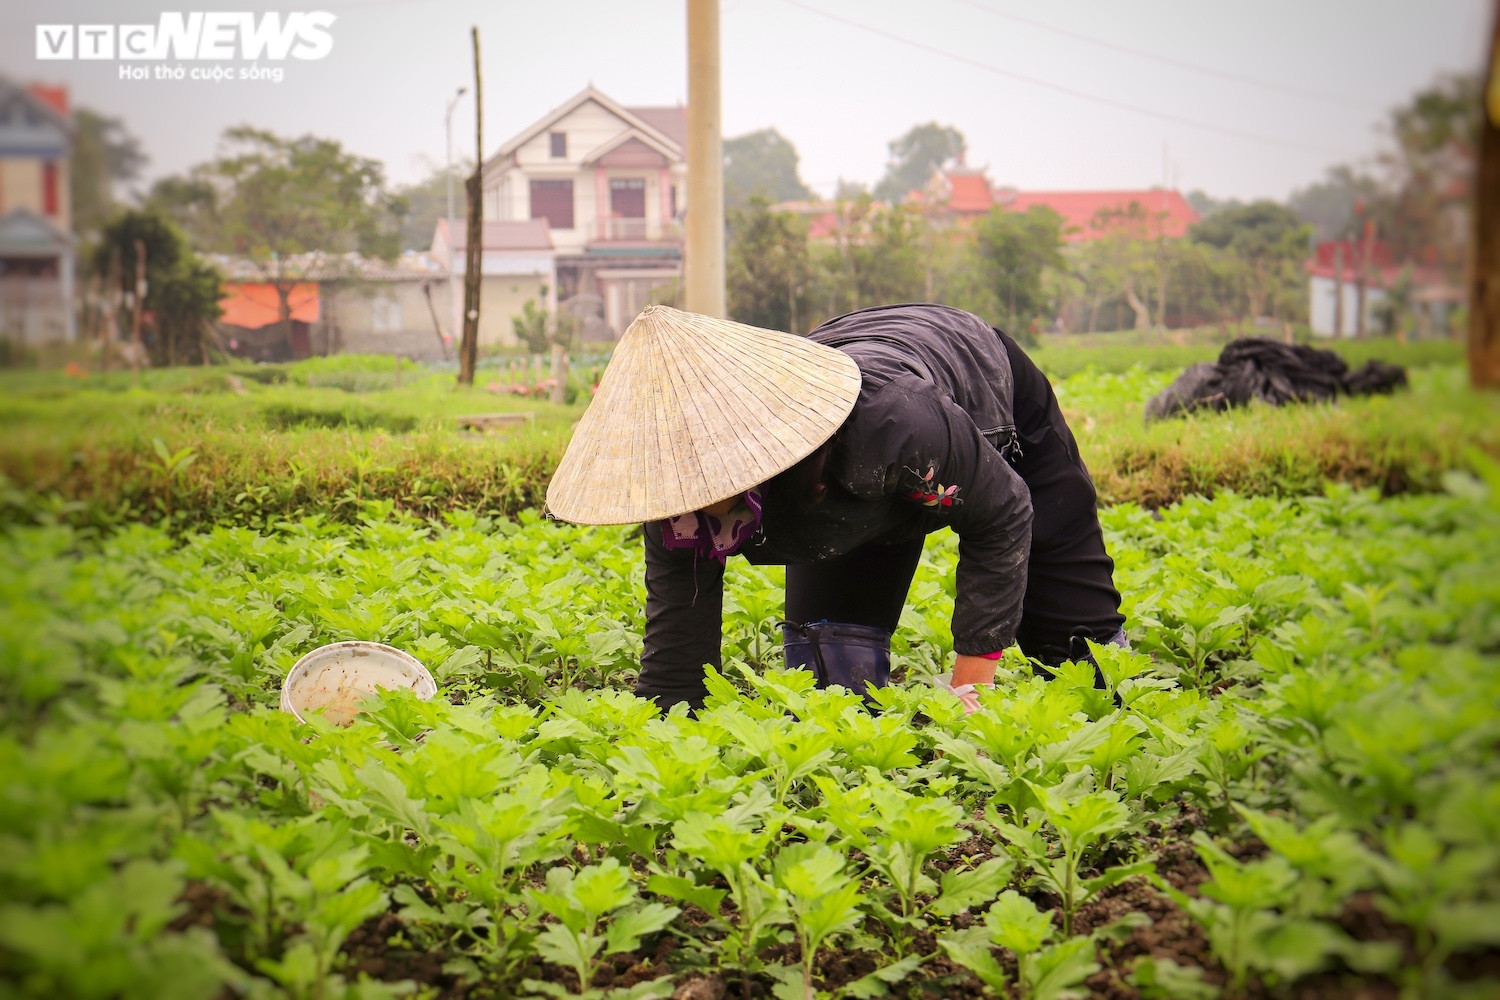 Ảnh: Vắng thương lái, người trồng hoa ở Quảng Bình lo 'mất Tết' - 2